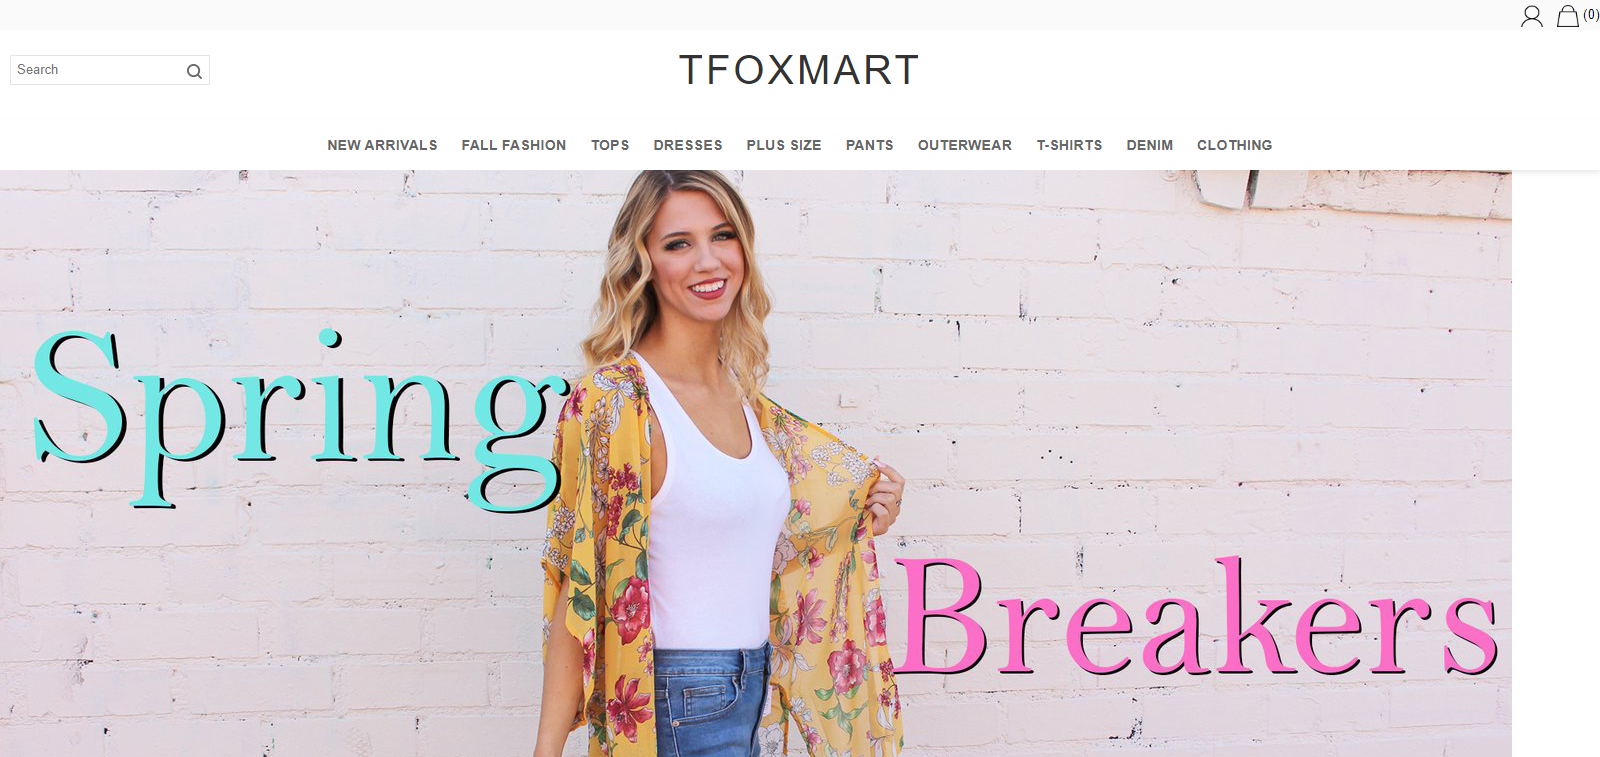 Tfoxmart Homepage Image